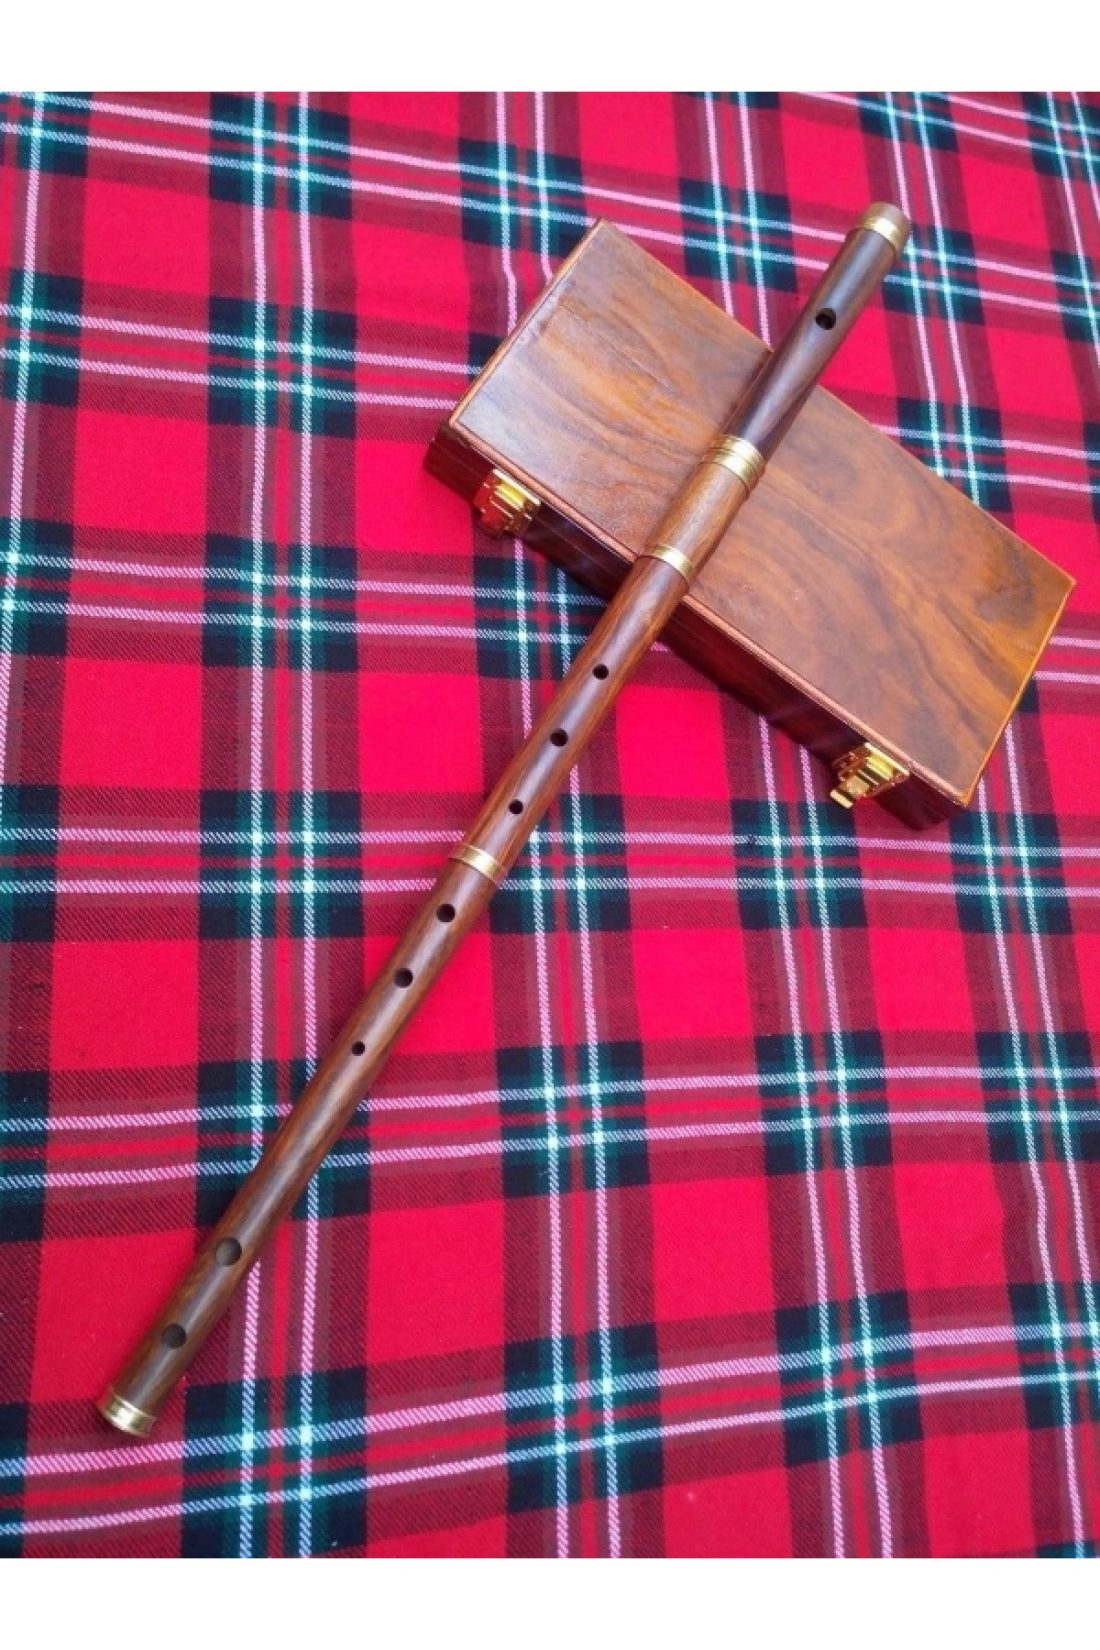 irish wooden flute